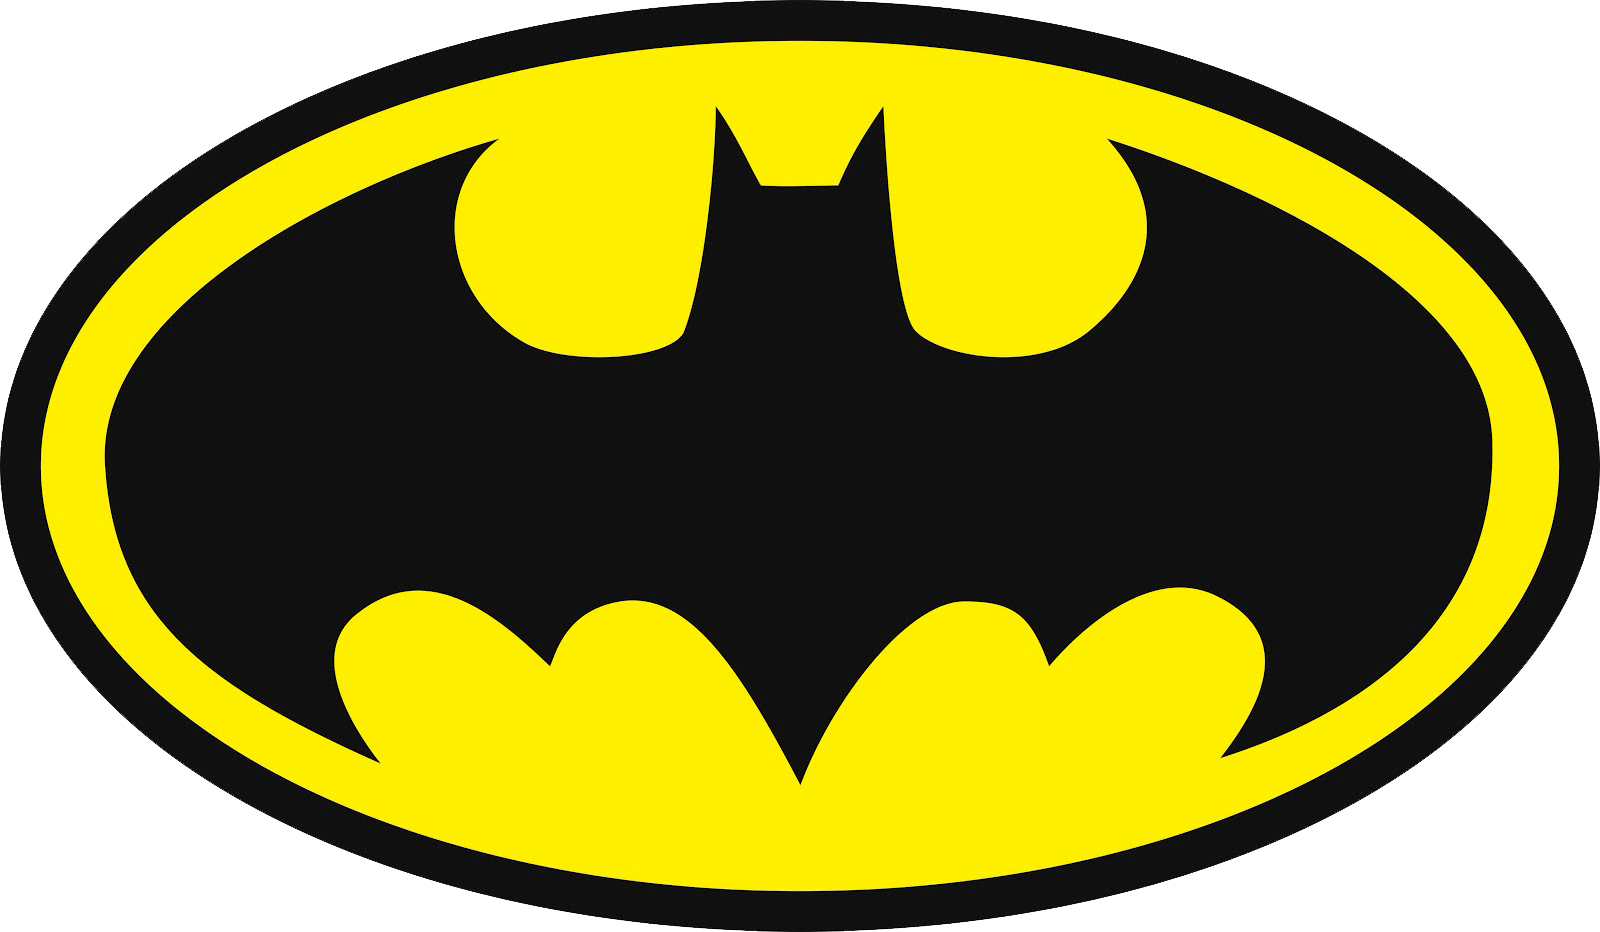 Escudo do Batman em png | Quero Imagem